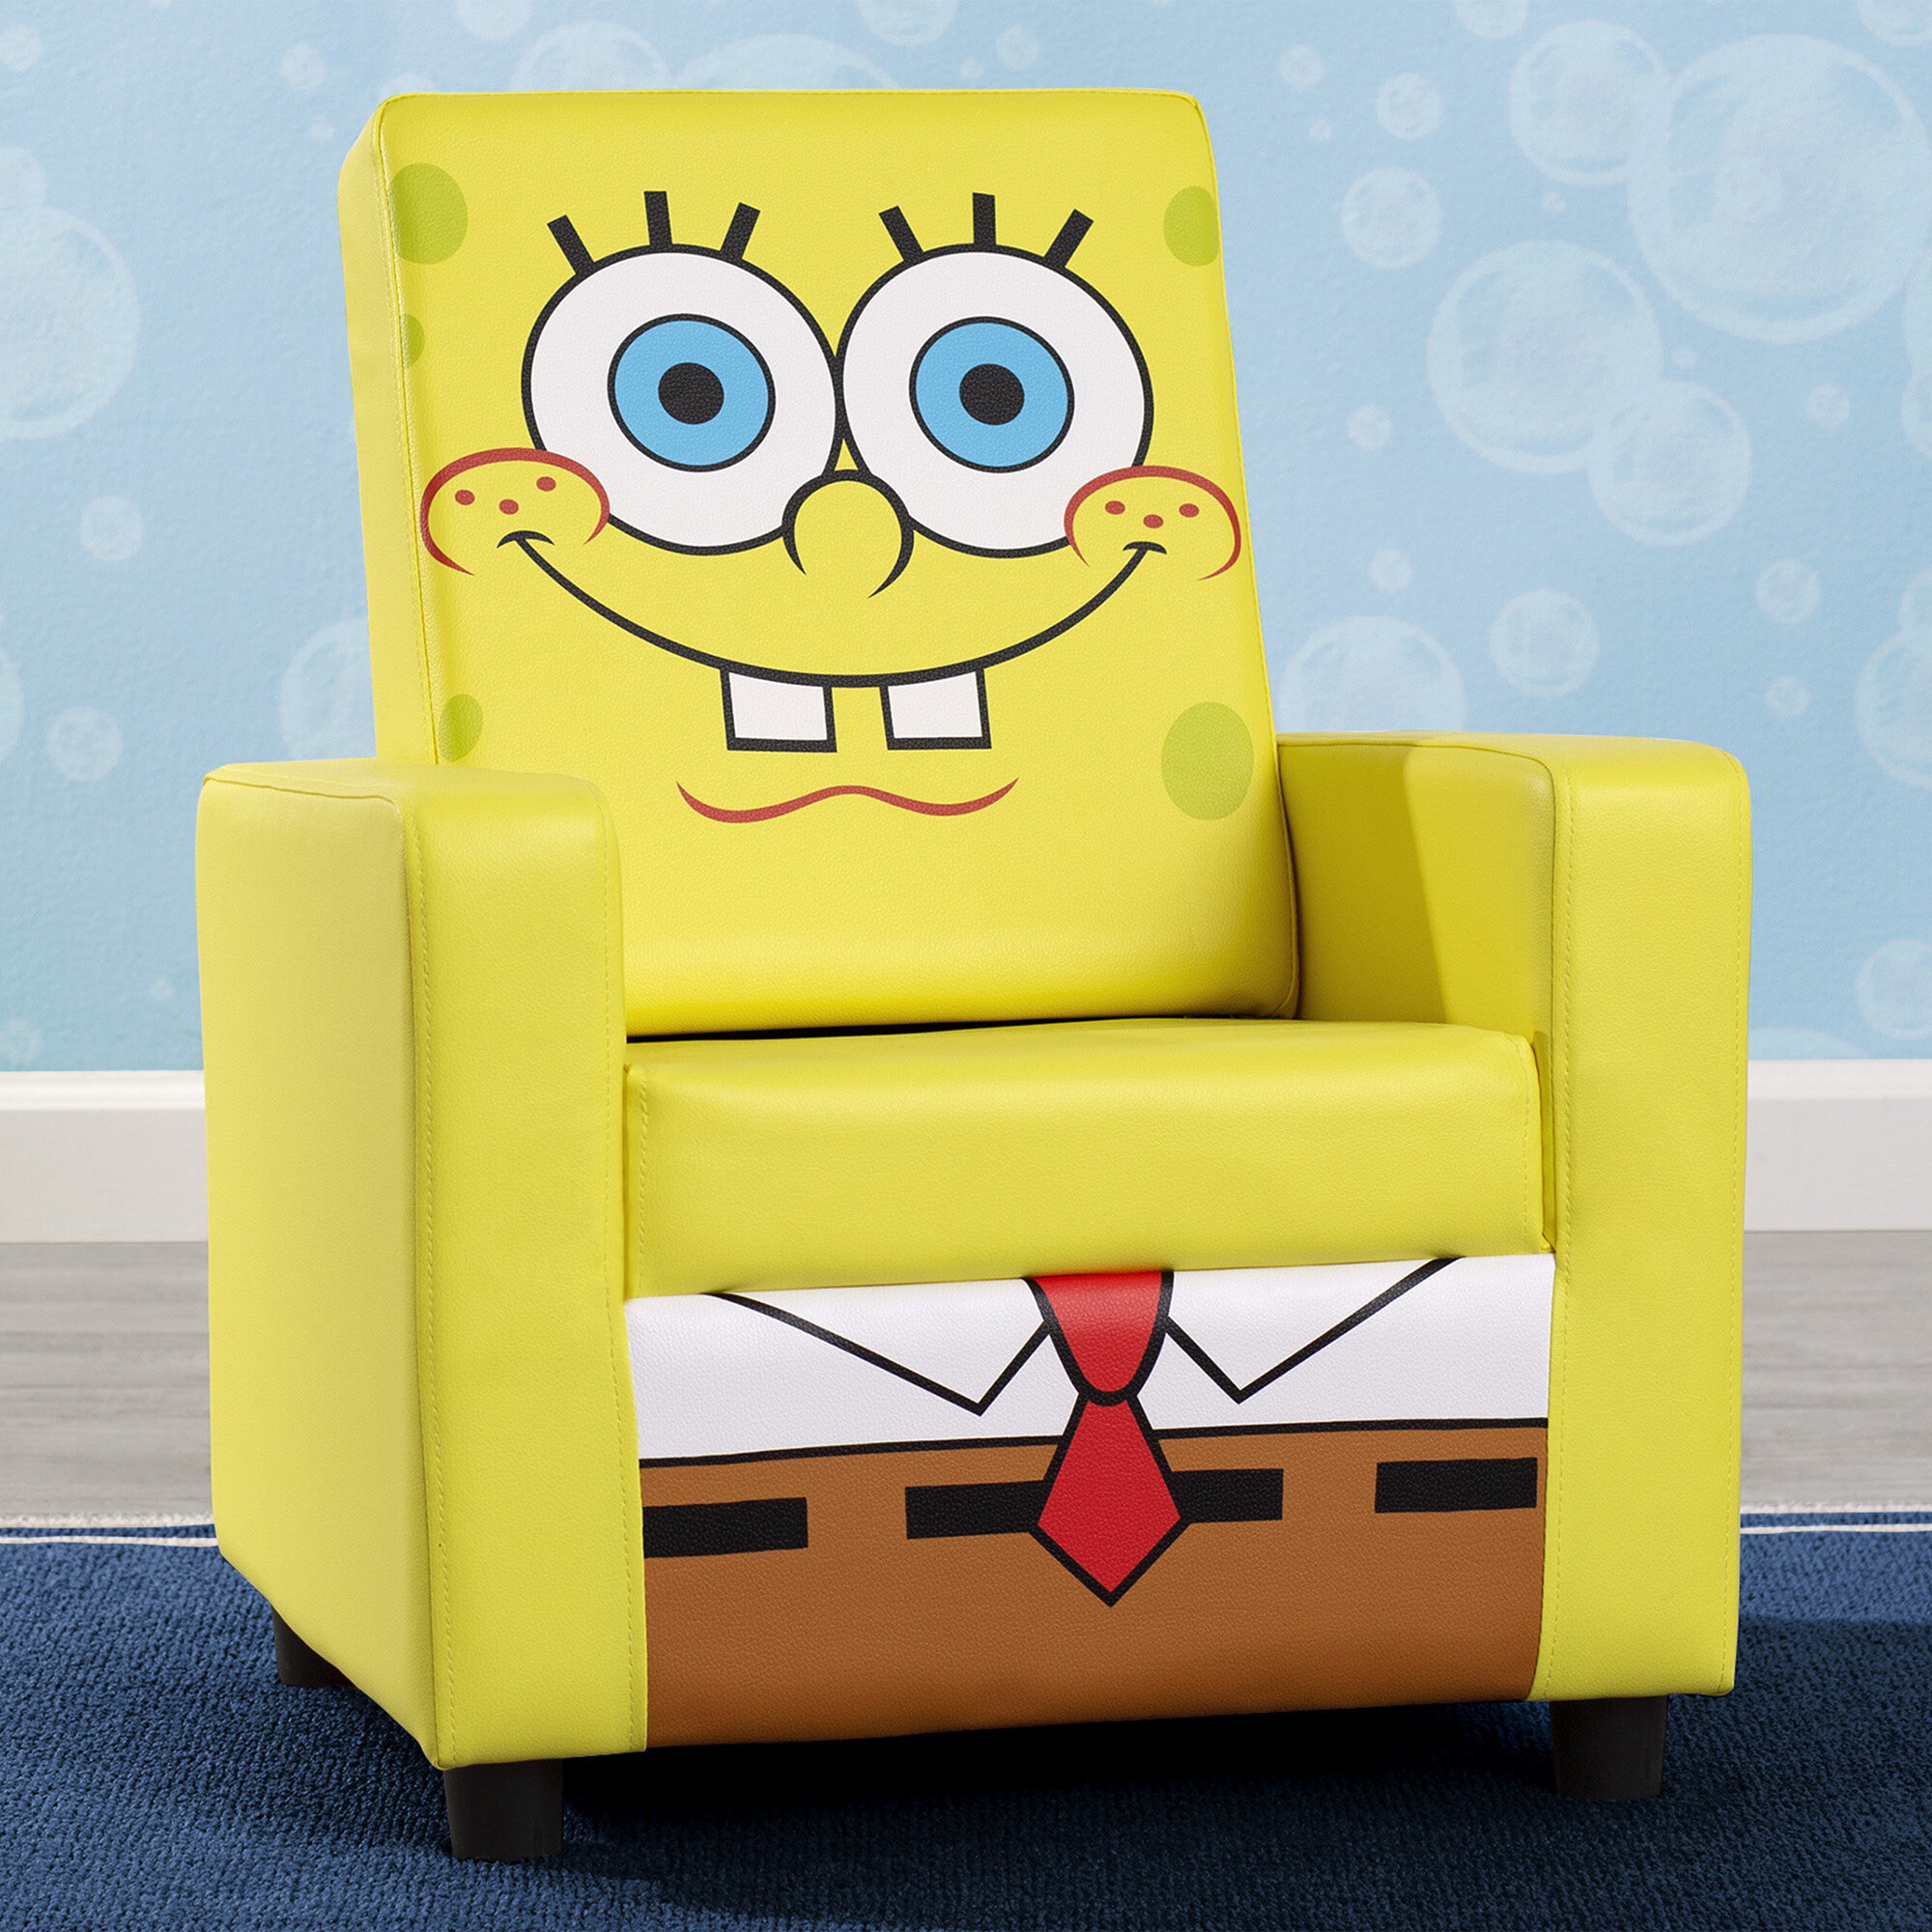 https://assets.wfcdn.com/im/08634995/compr-r85/1399/139974299/spongebob-squarepants-high-back-upholstered-kids-desk-activity-chair.jpg